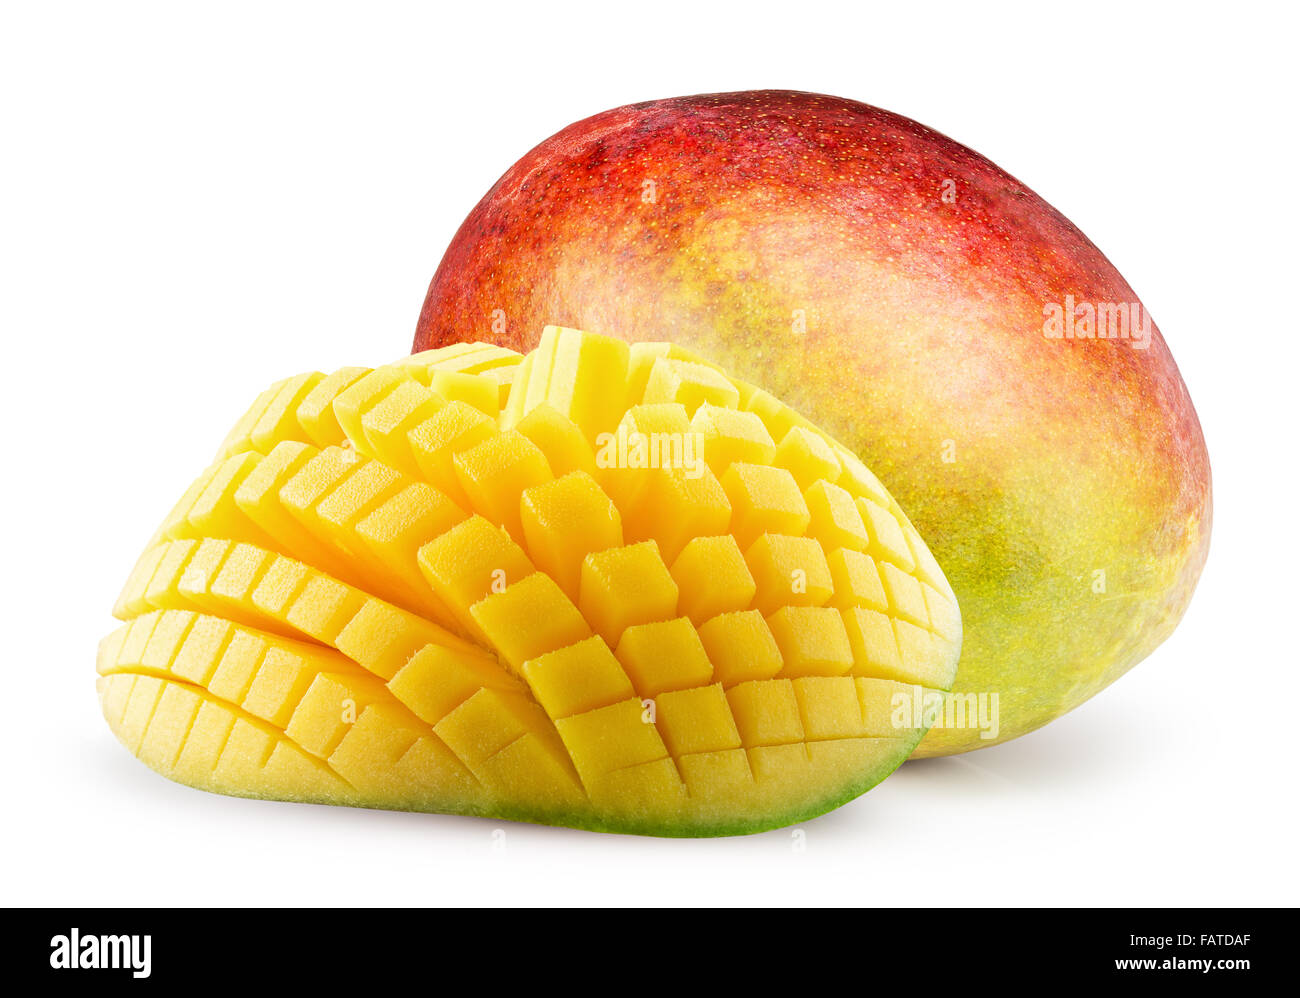 mangoes isolated on the white background Stock Photo - Alamy